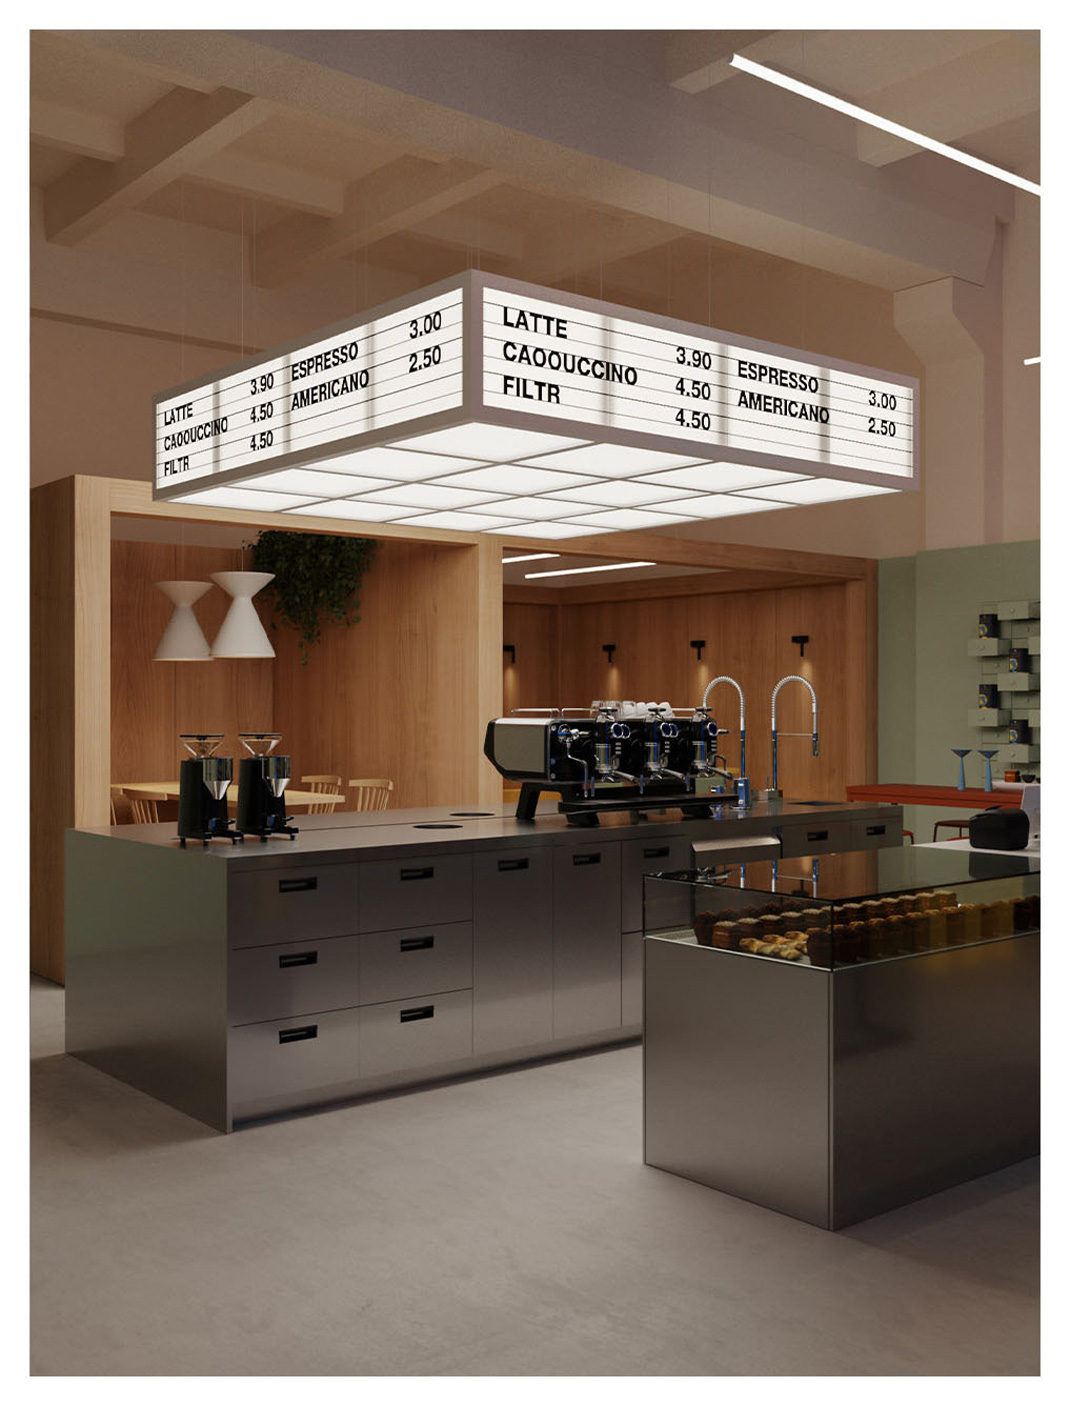 浓咖啡吧 俄罗斯 咖啡店 灯箱 logo设计 vi设计 空间设计